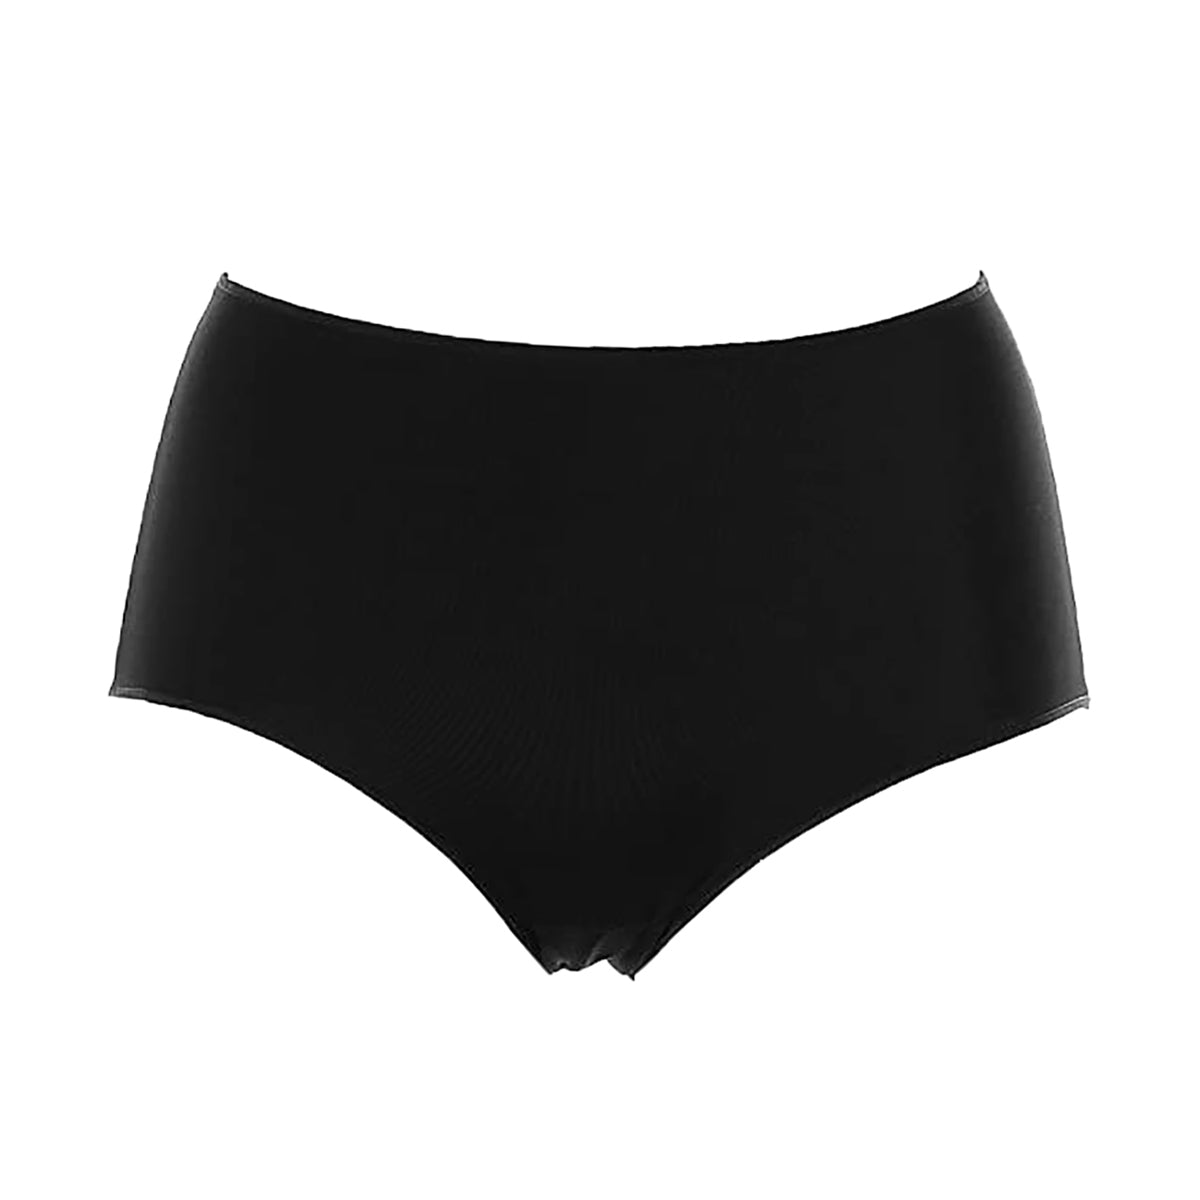 YUMMIE Nylon Seamless Cami Women's Underwear Sz M/L Black YT6-575 (New) -  Conseil scolaire francophone de Terre-Neuve et Labrador